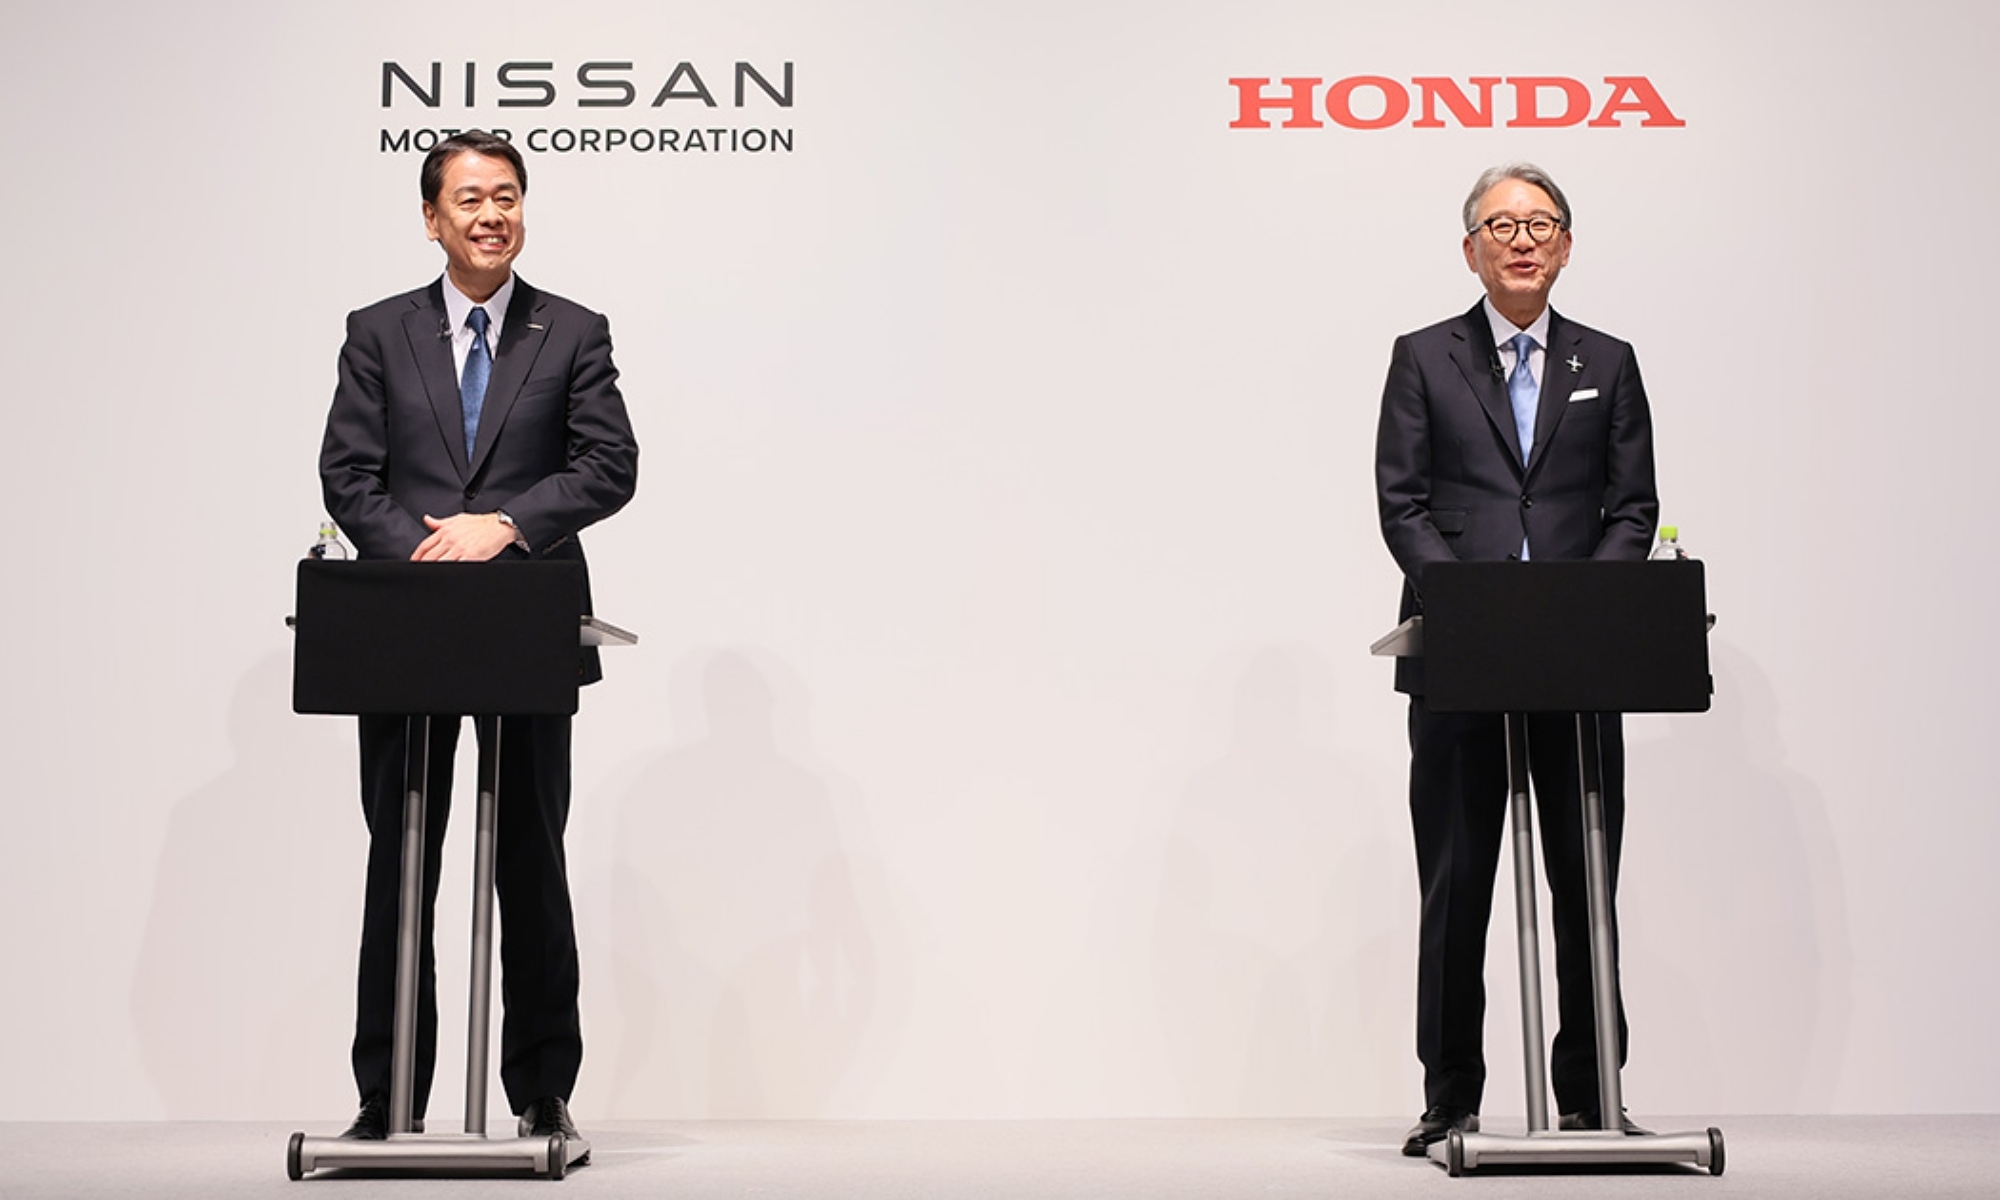 Las dos compañías japonesas han celebrado este primer acuerdo de asociación.